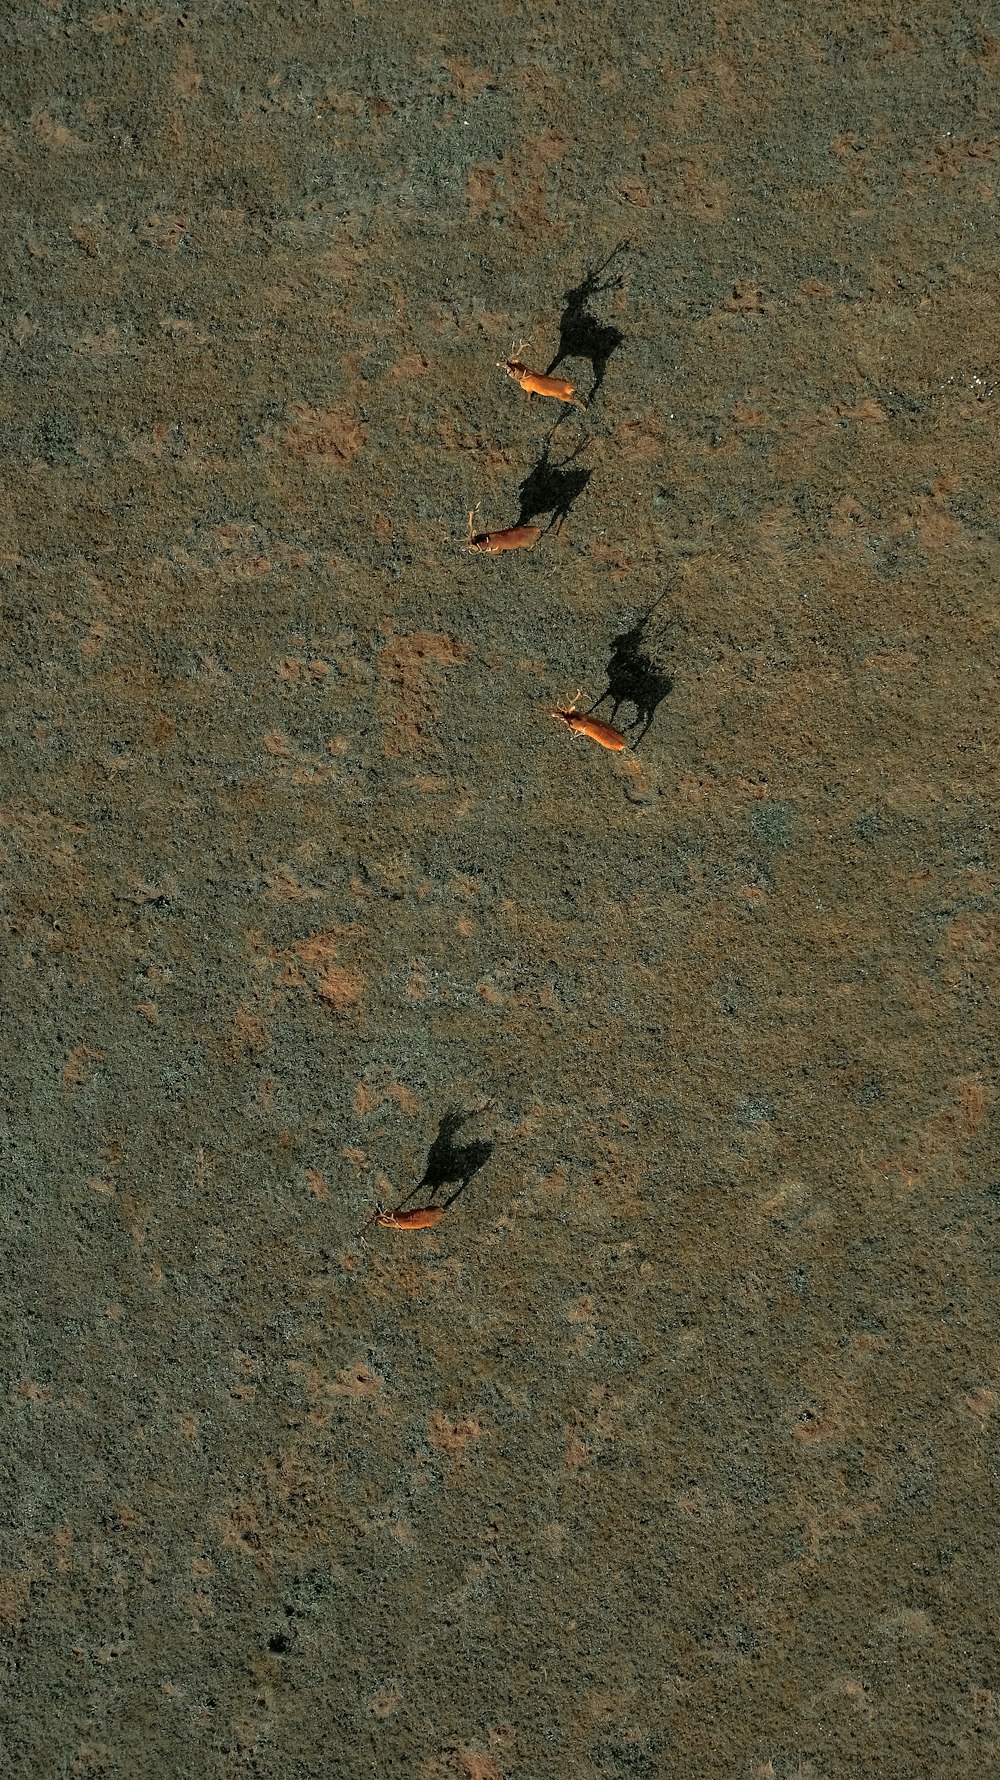 un paio di uccelli in piedi in cima a un campo sterrato